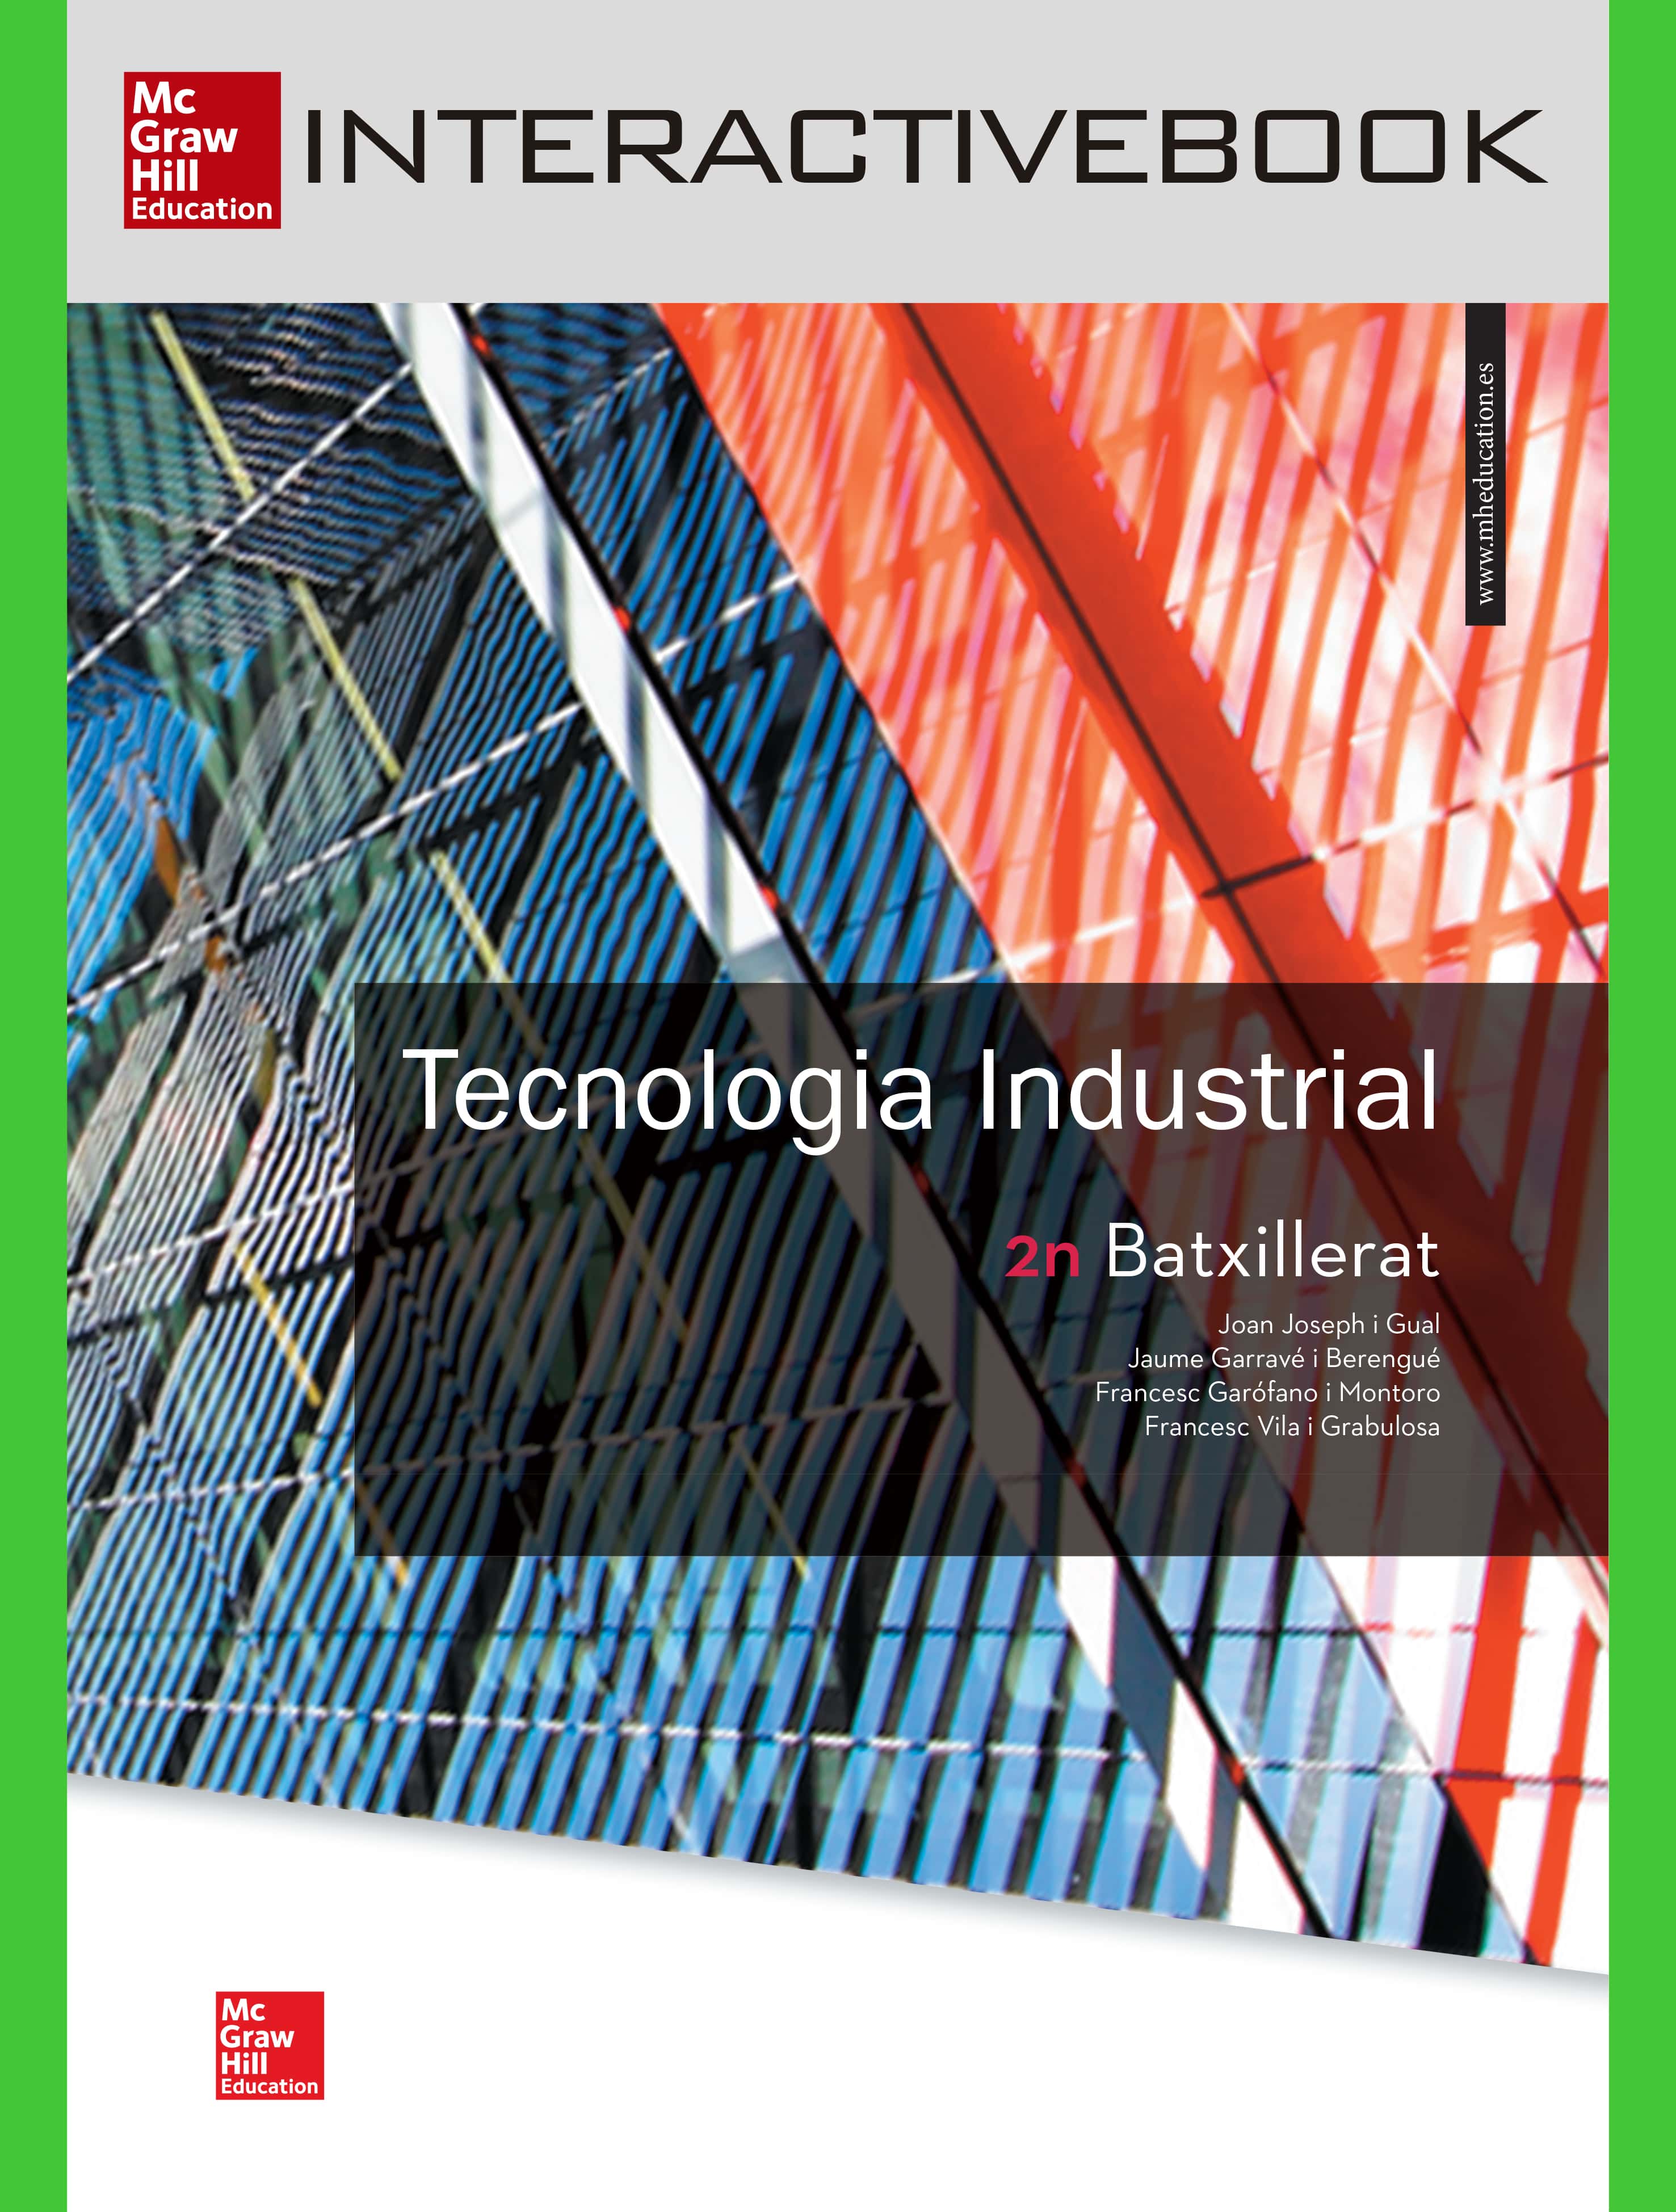  INTERACTIVEBOOK - Tecnología Industrial II Catalán